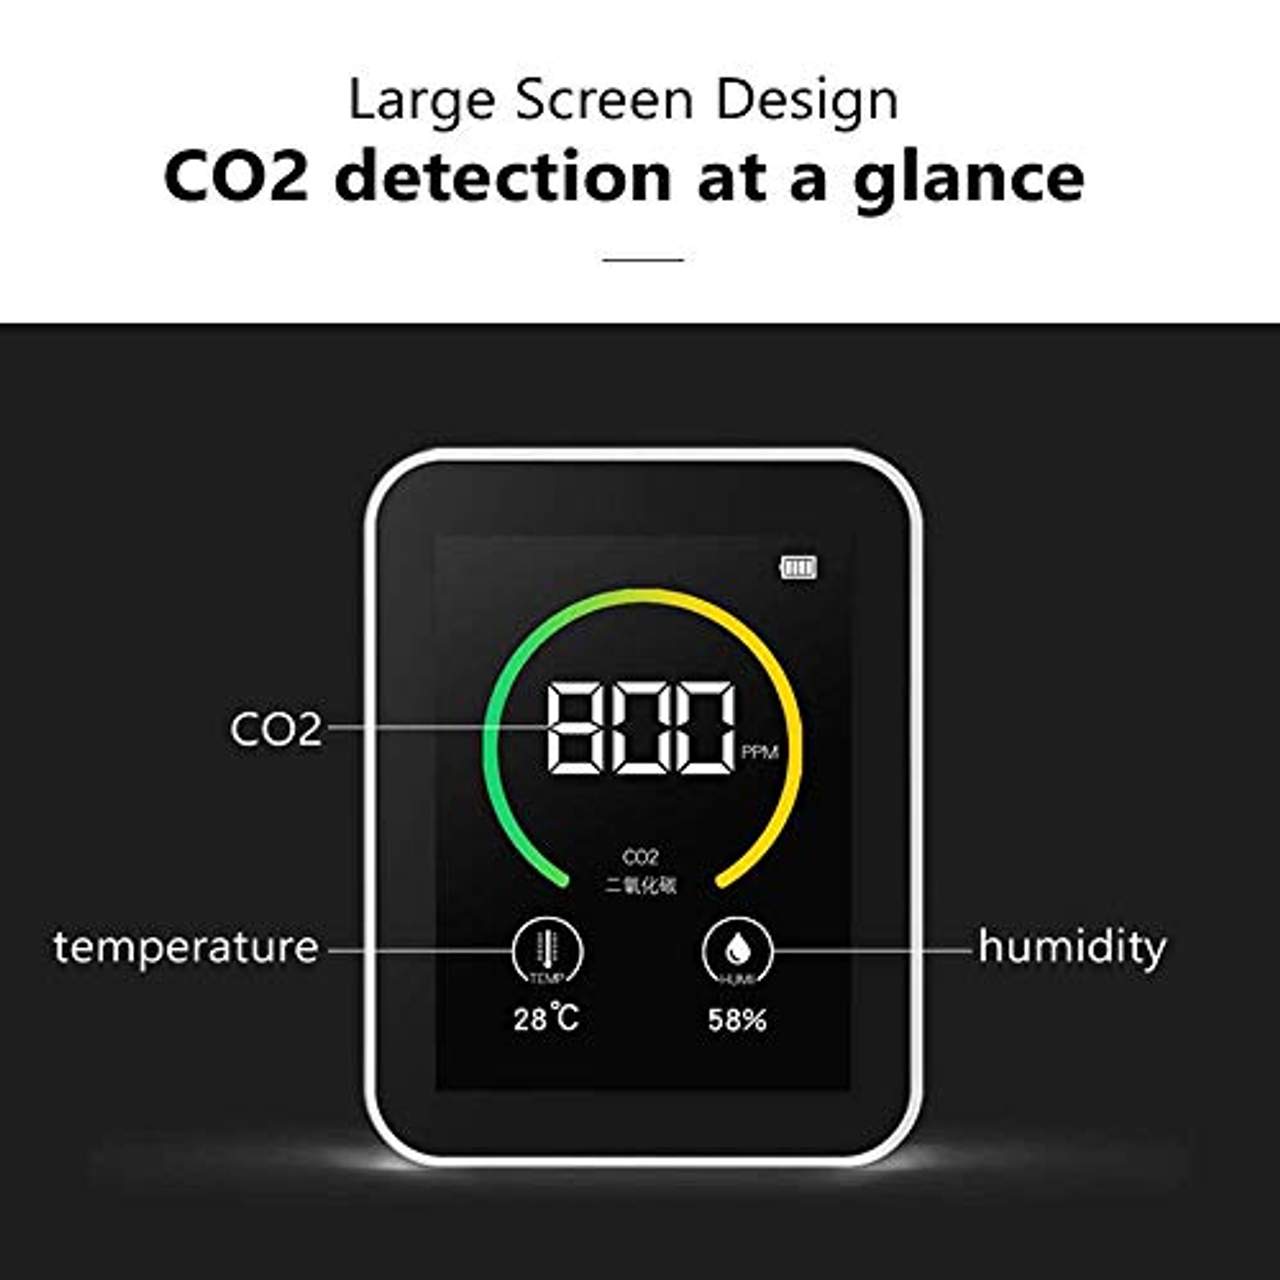 CO2 Messgerät Luftqualität Messgerät USB CO2 Kohlendioxid Detektor